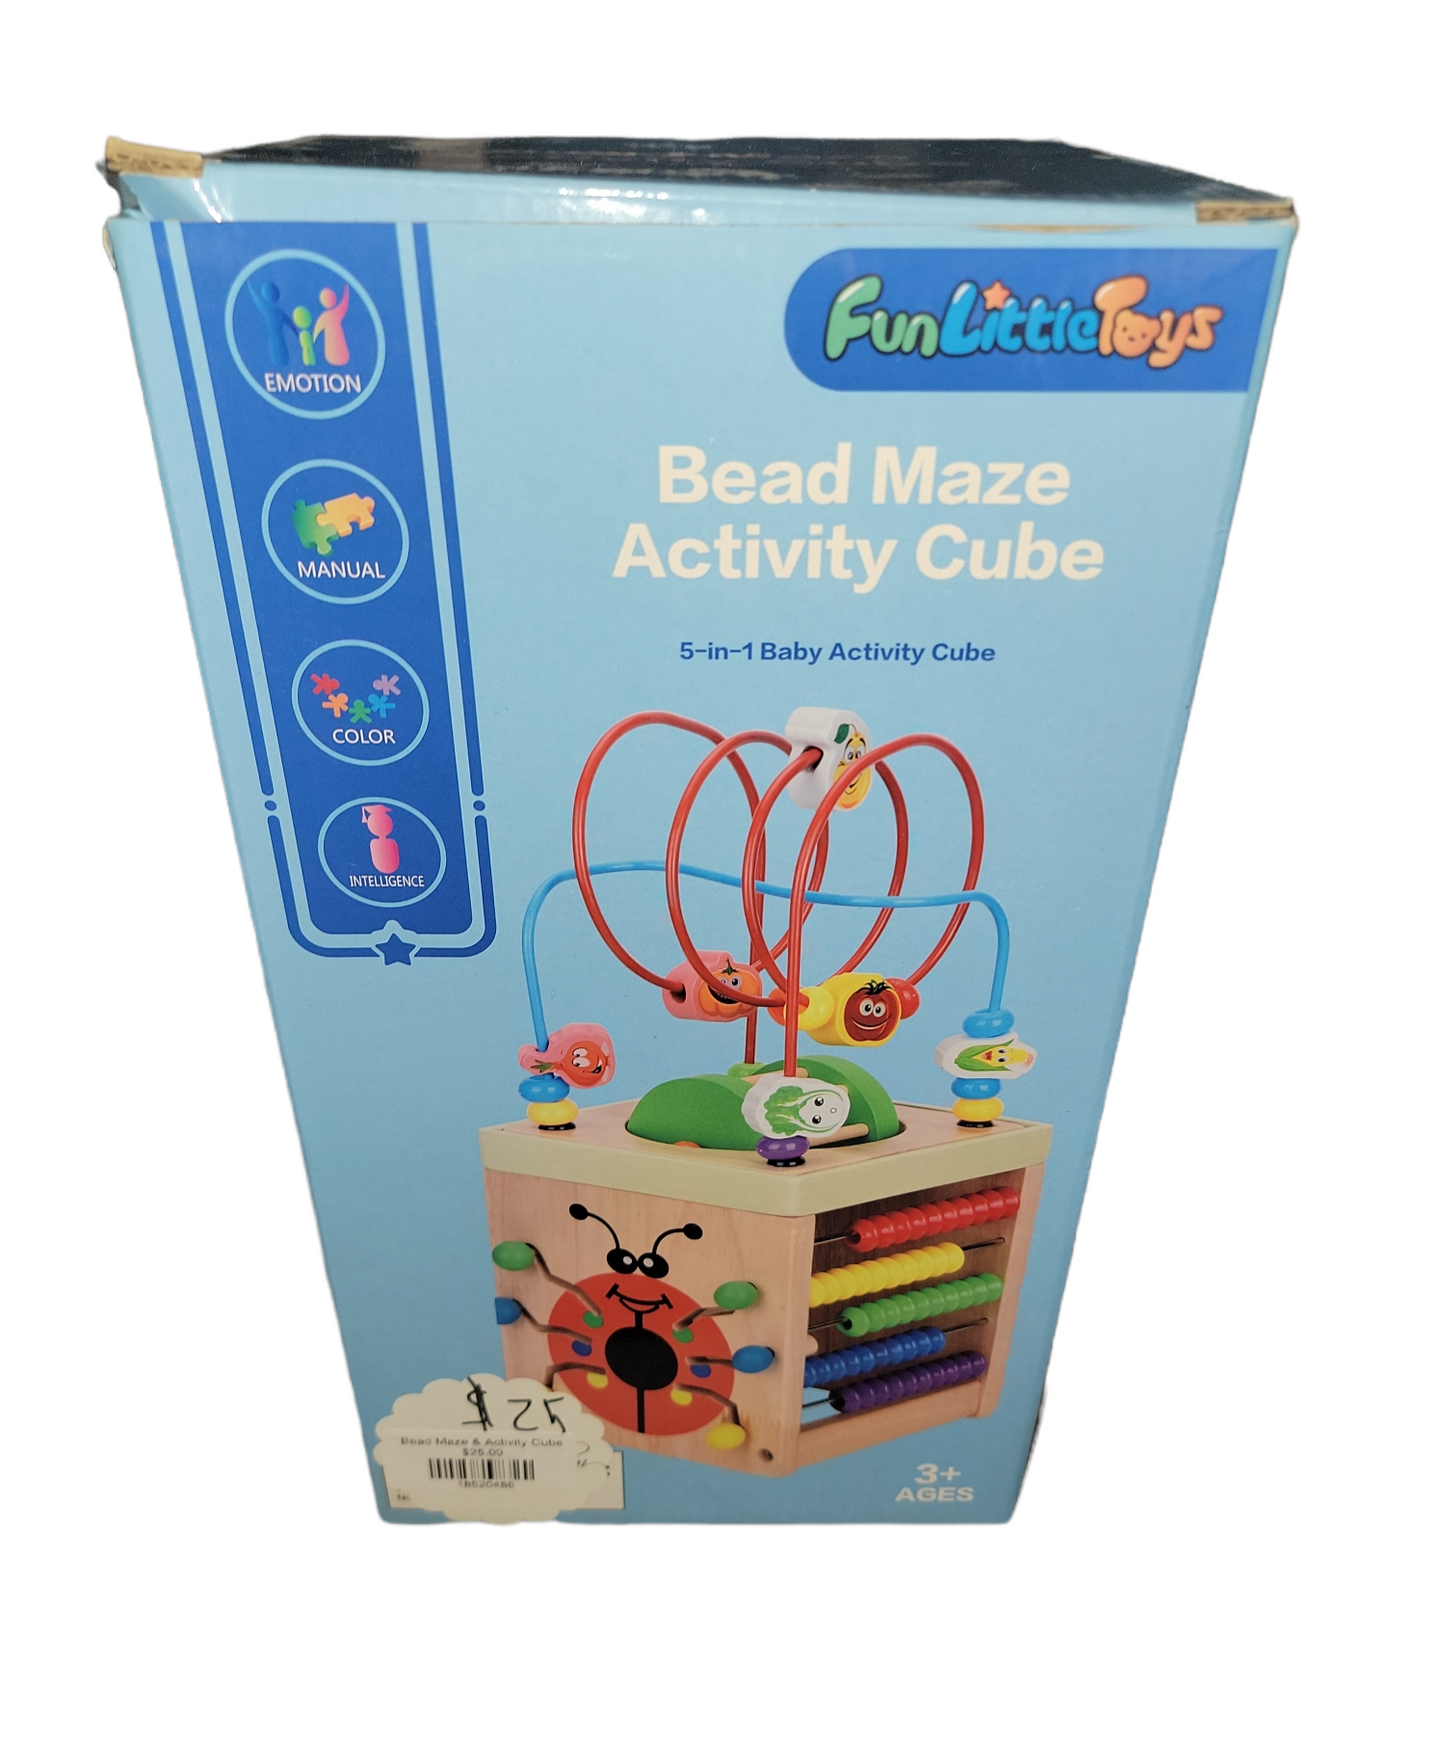 Bead Maze & Activity Cube